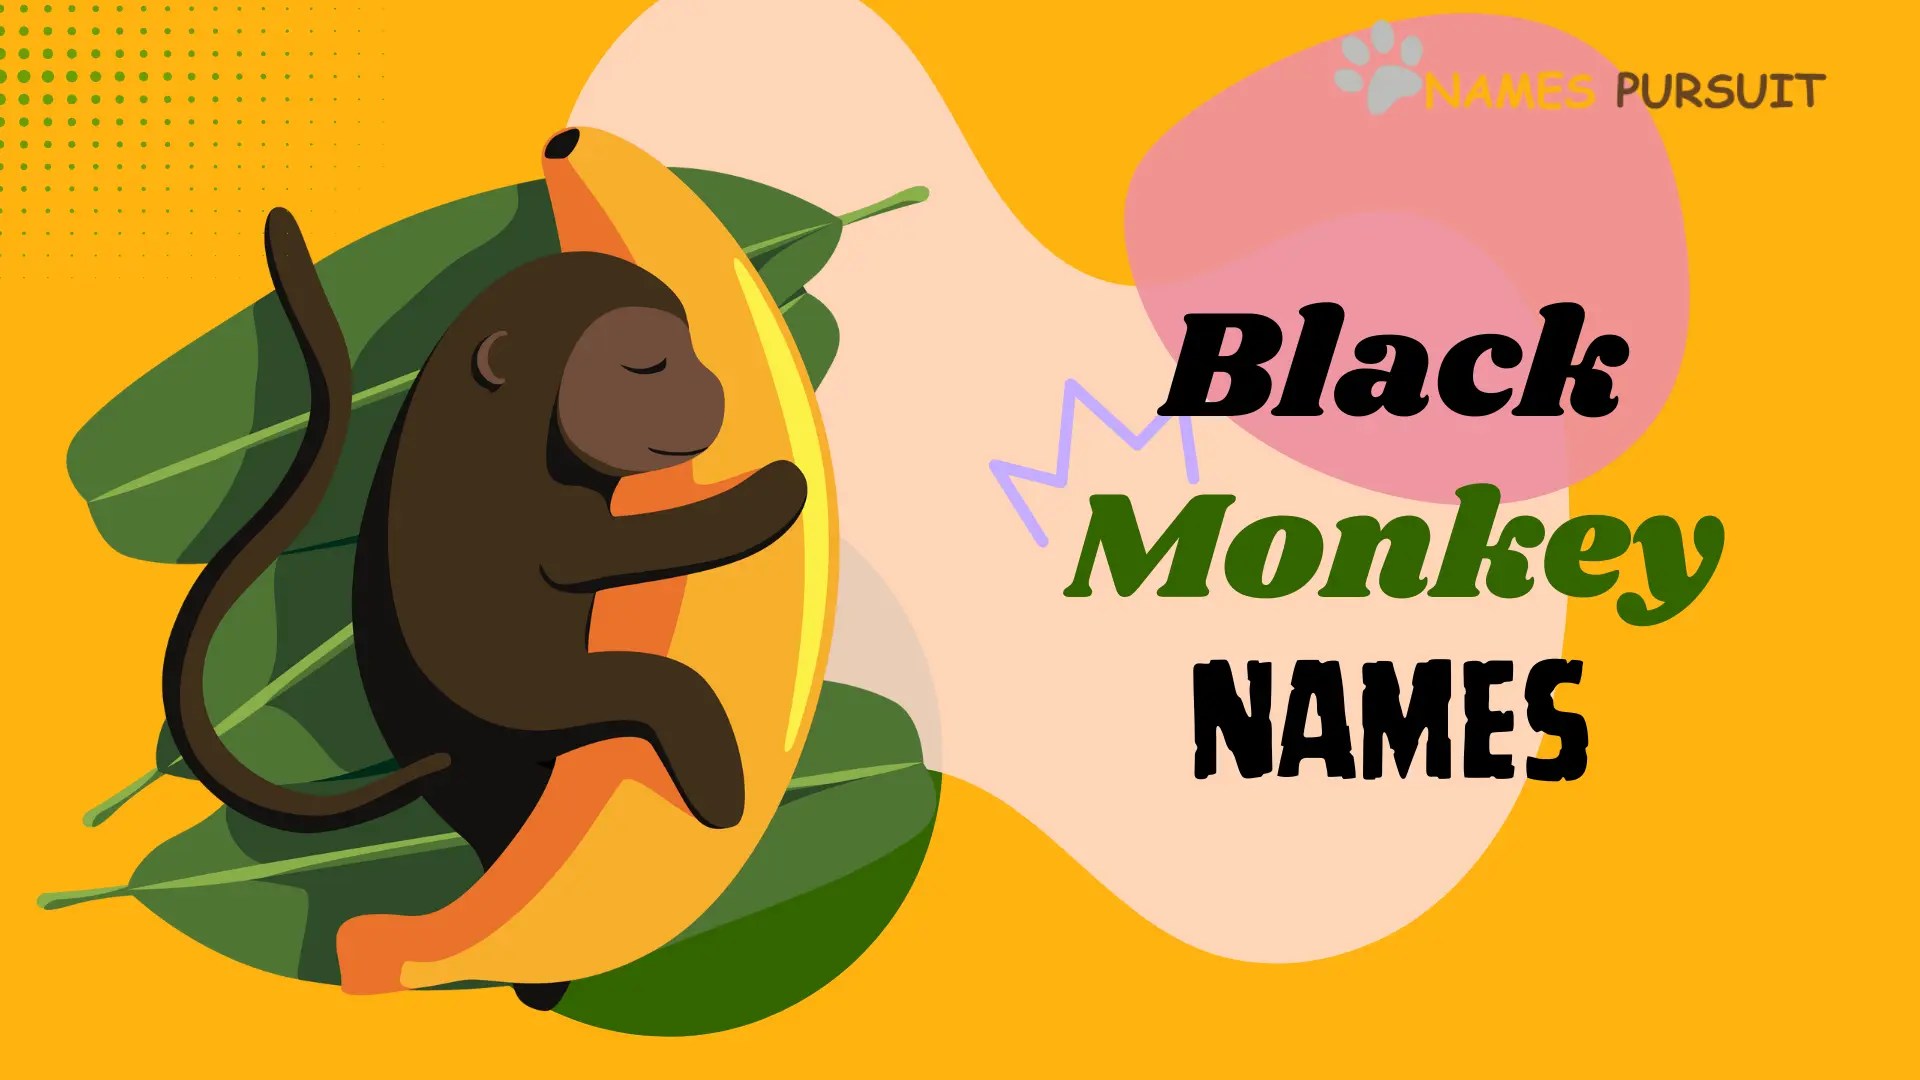 Black monkey names